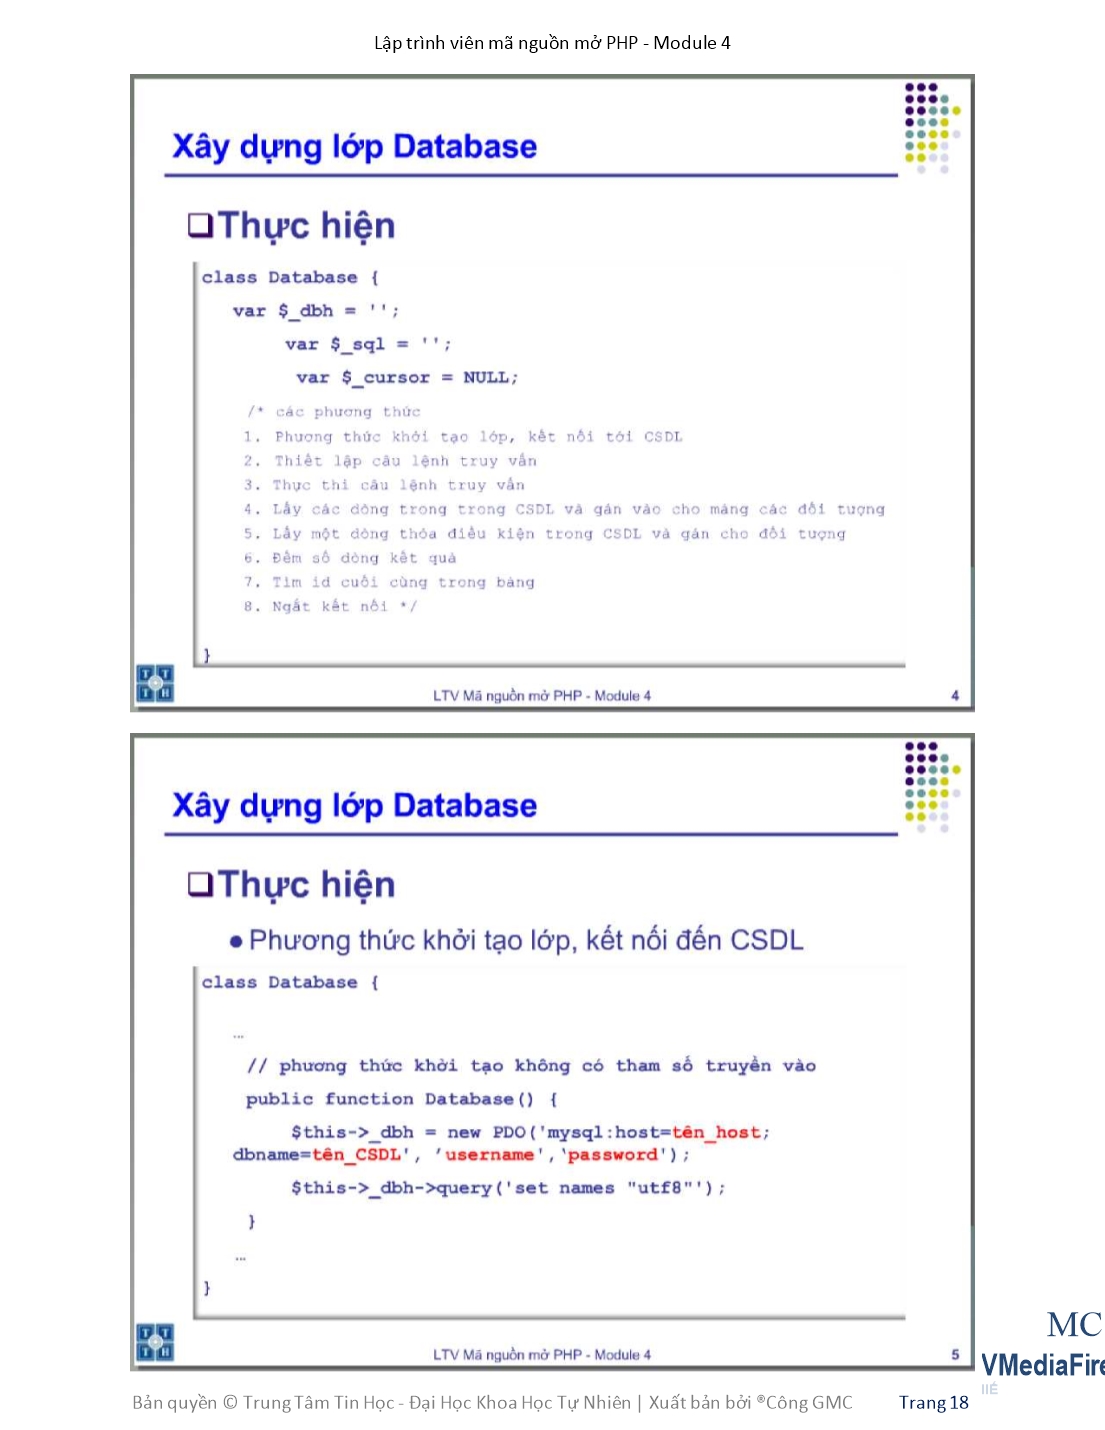 Giáo trình Module 4: Lập trình viên mã nguồn mở PHP - Bài 2: Model trang 3